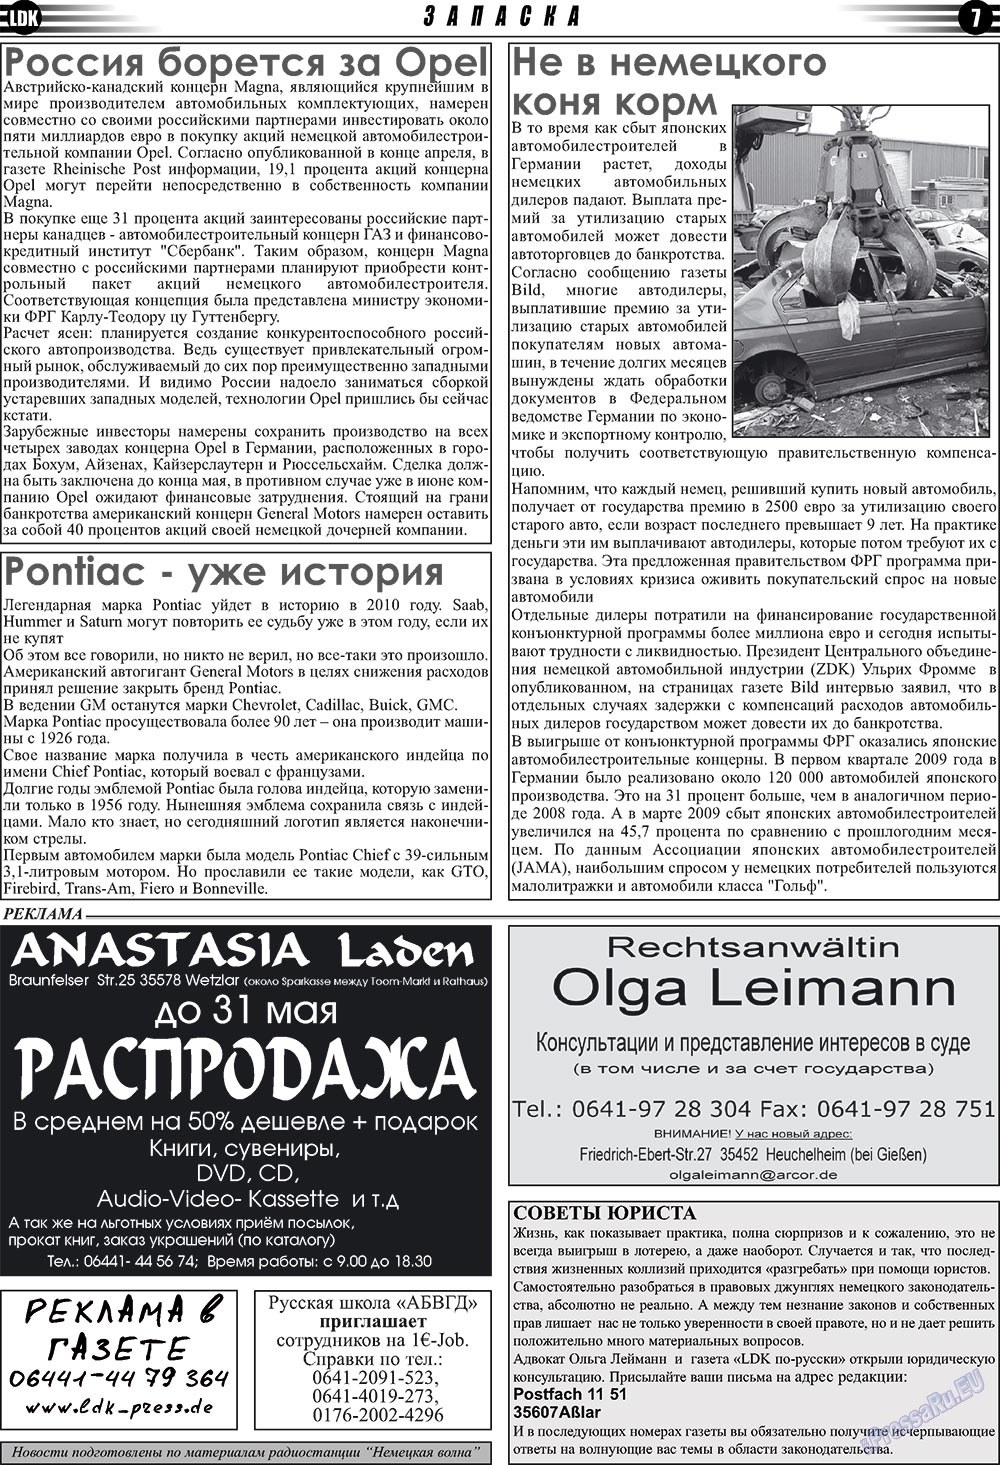 LDK по-русски (газета). 2009 год, номер 5, стр. 7